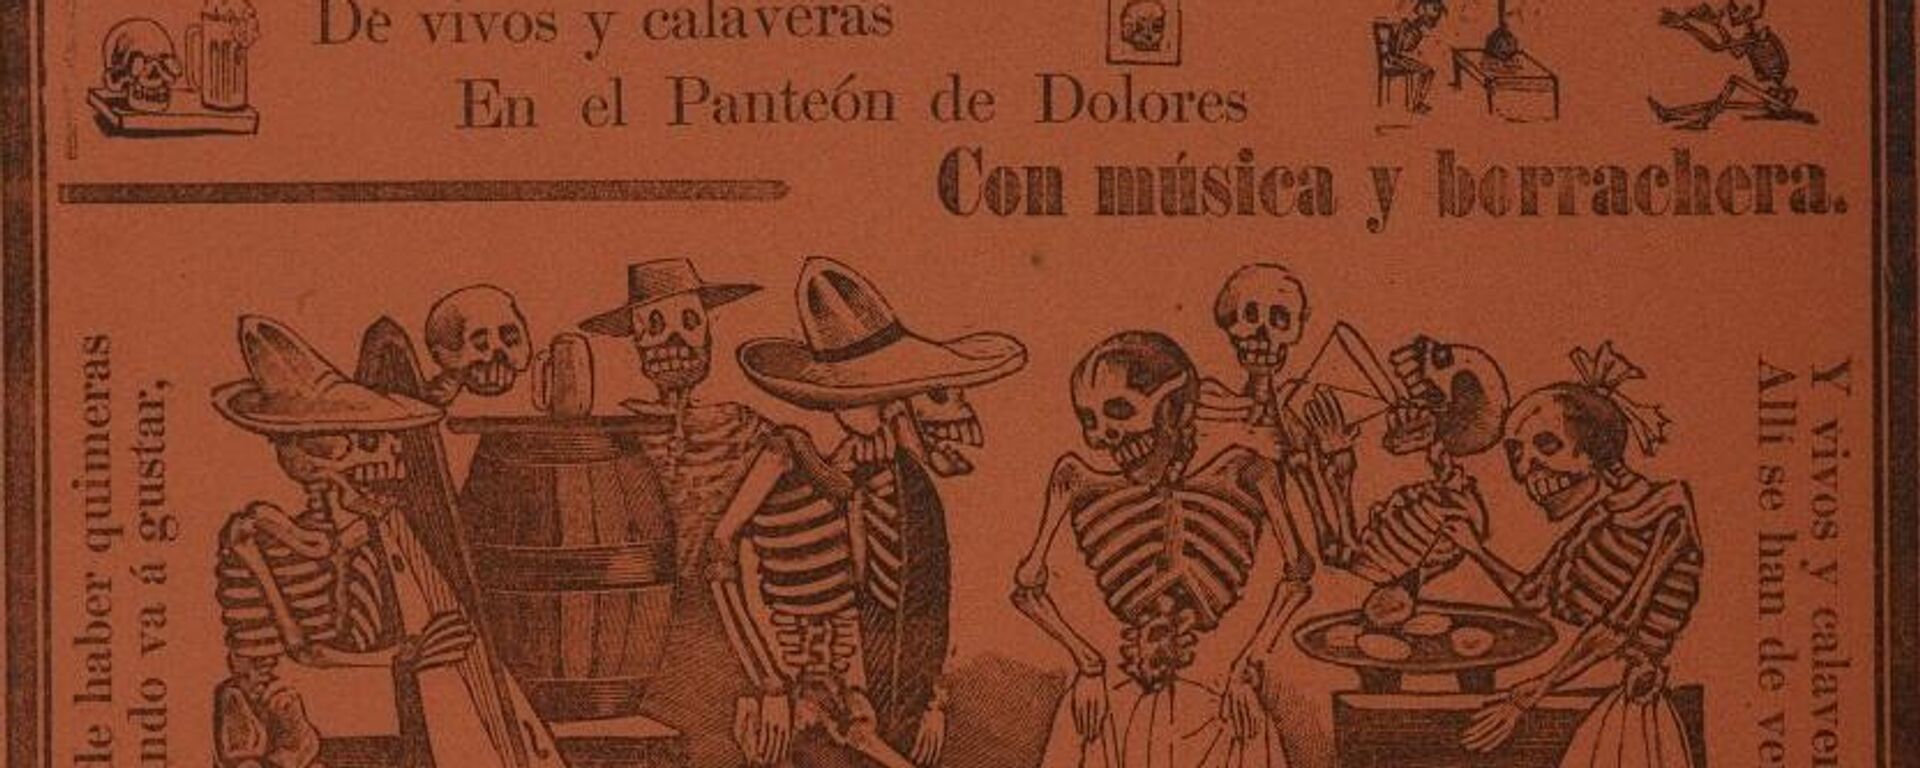 Gran fandango y francachela, grabado de José Guadalupe Posada - Sputnik Mundo, 1920, 29.10.2021